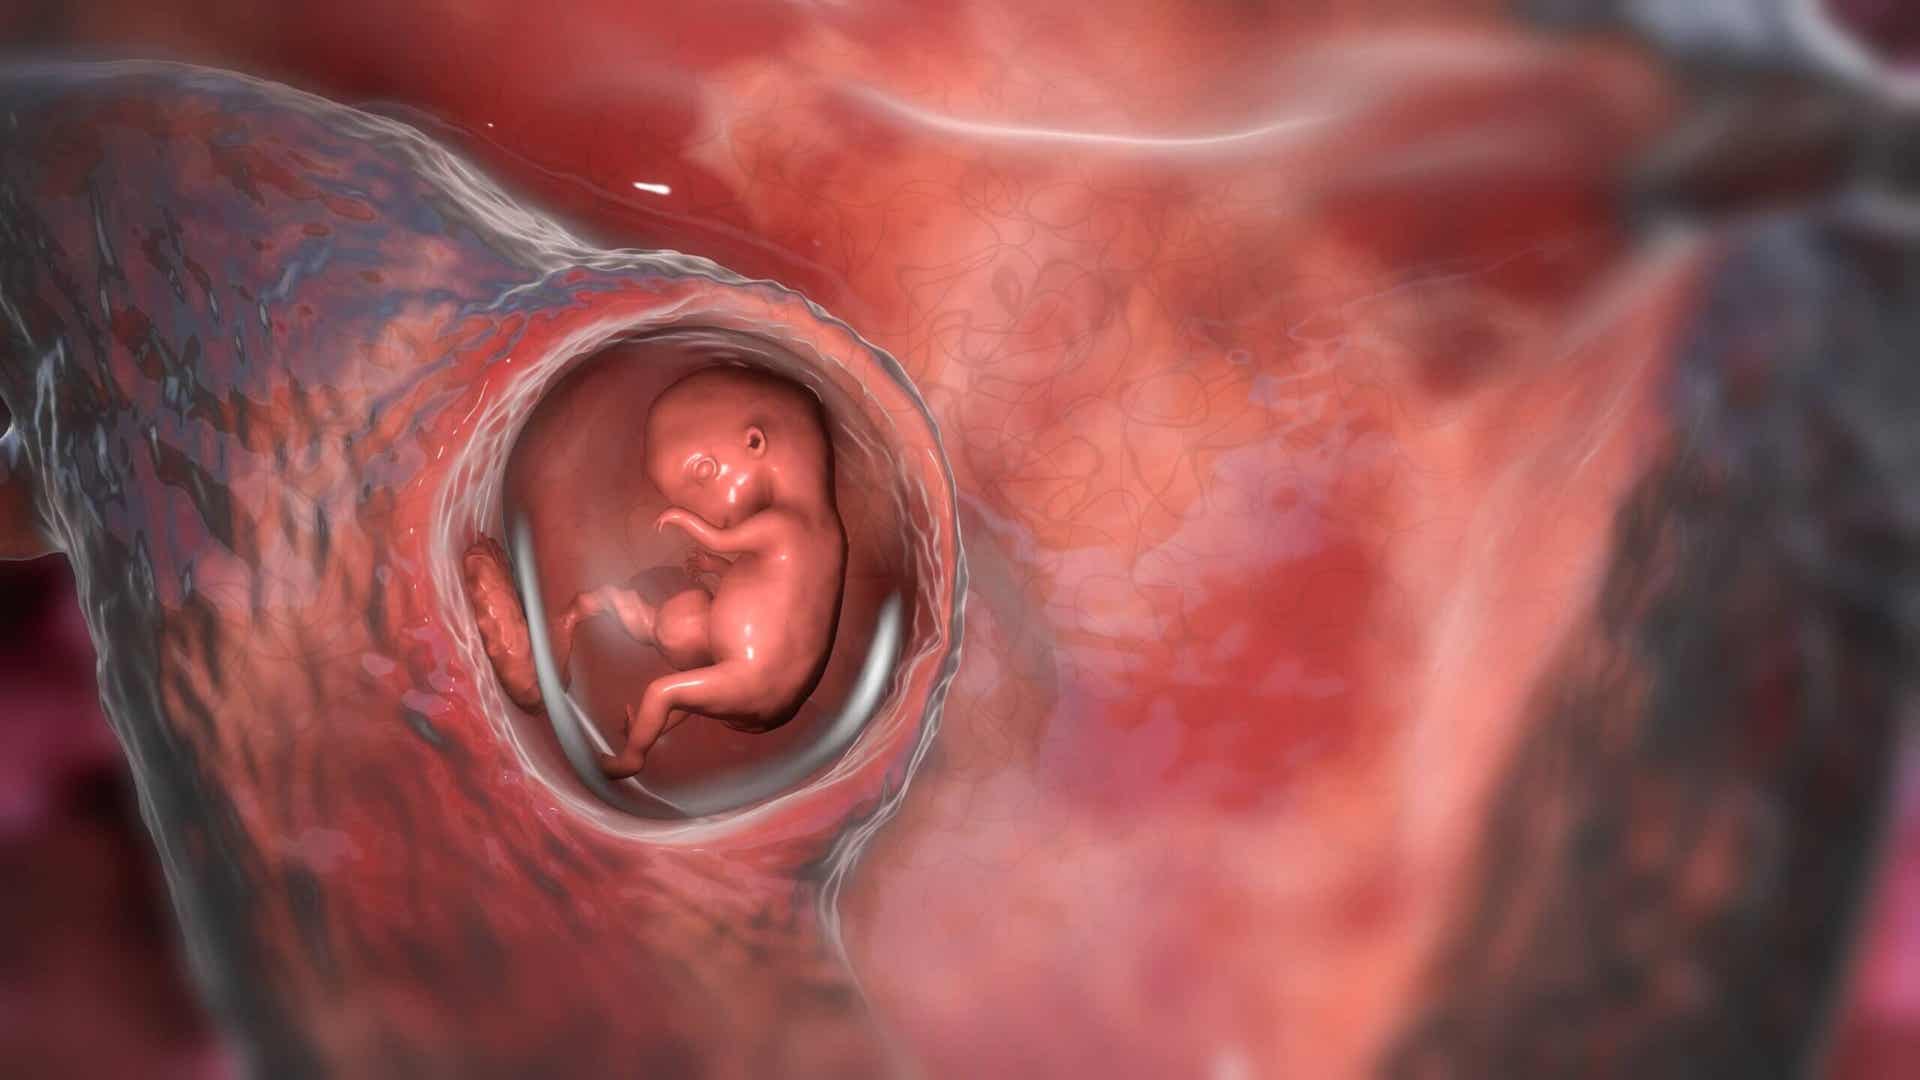 El tapón mucoso cumple funciones de protección del feto.